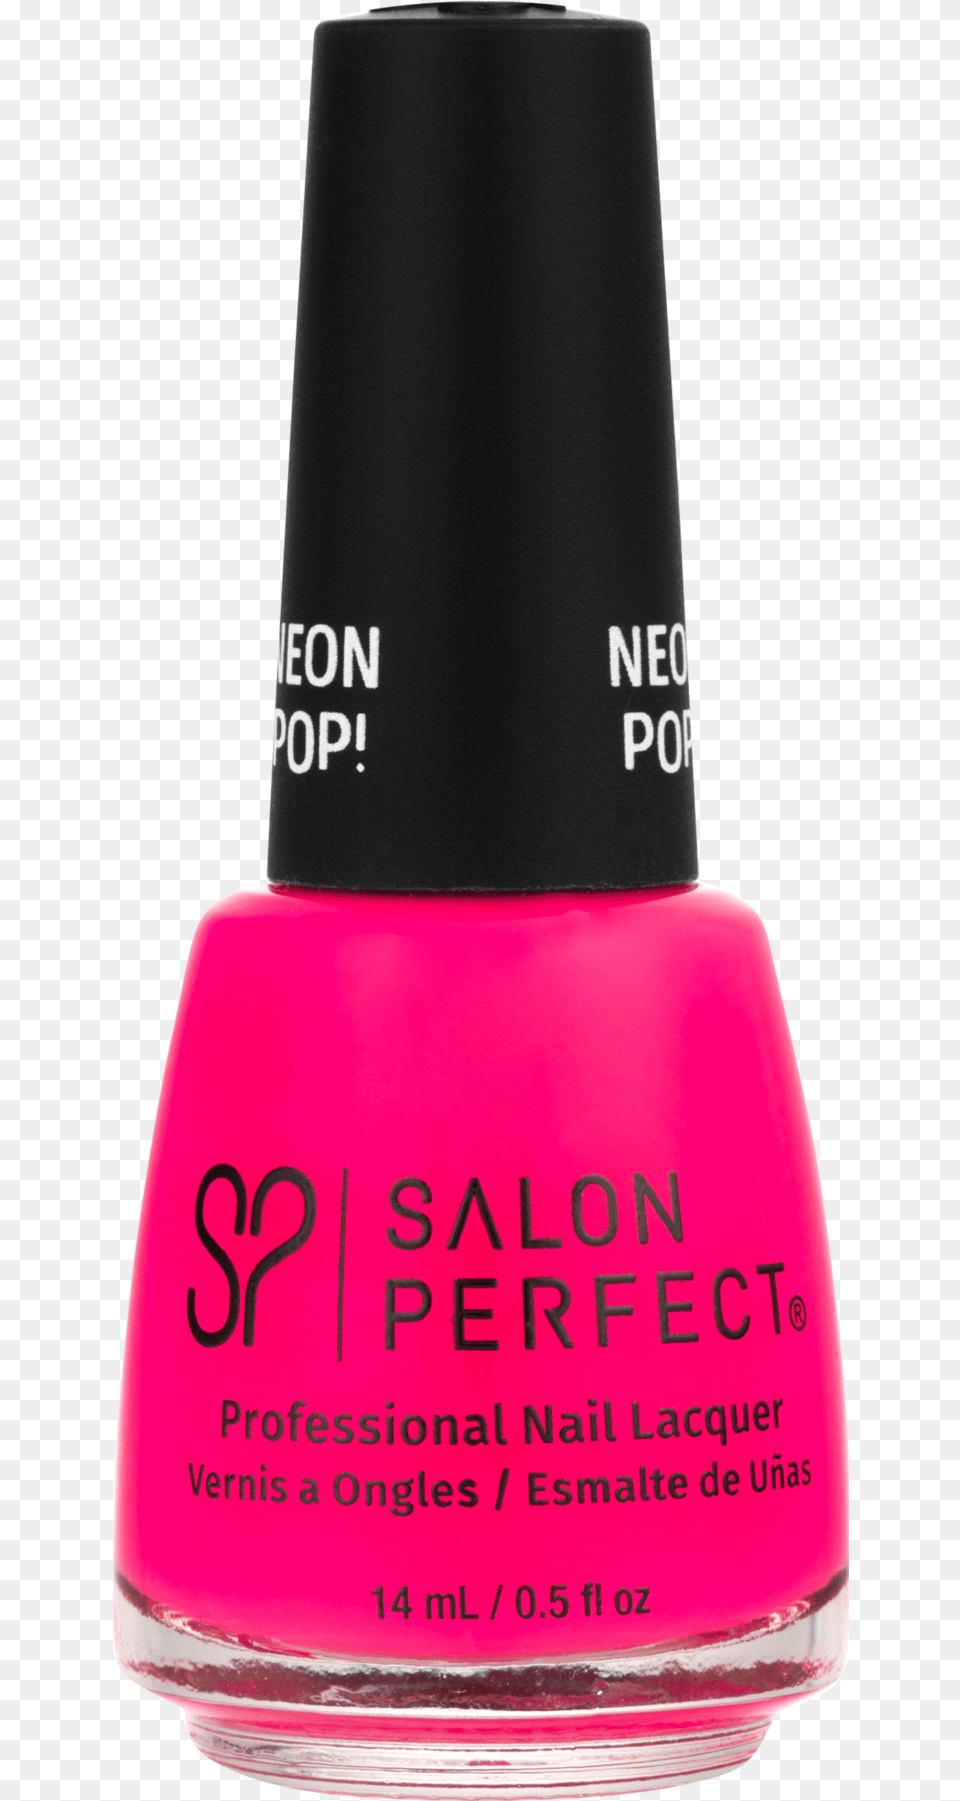 Salon Perfect Nail Polish Oh Snap Pink Gps I Love You Opi, Cosmetics, Nail Polish, Bottle, Perfume Free Png